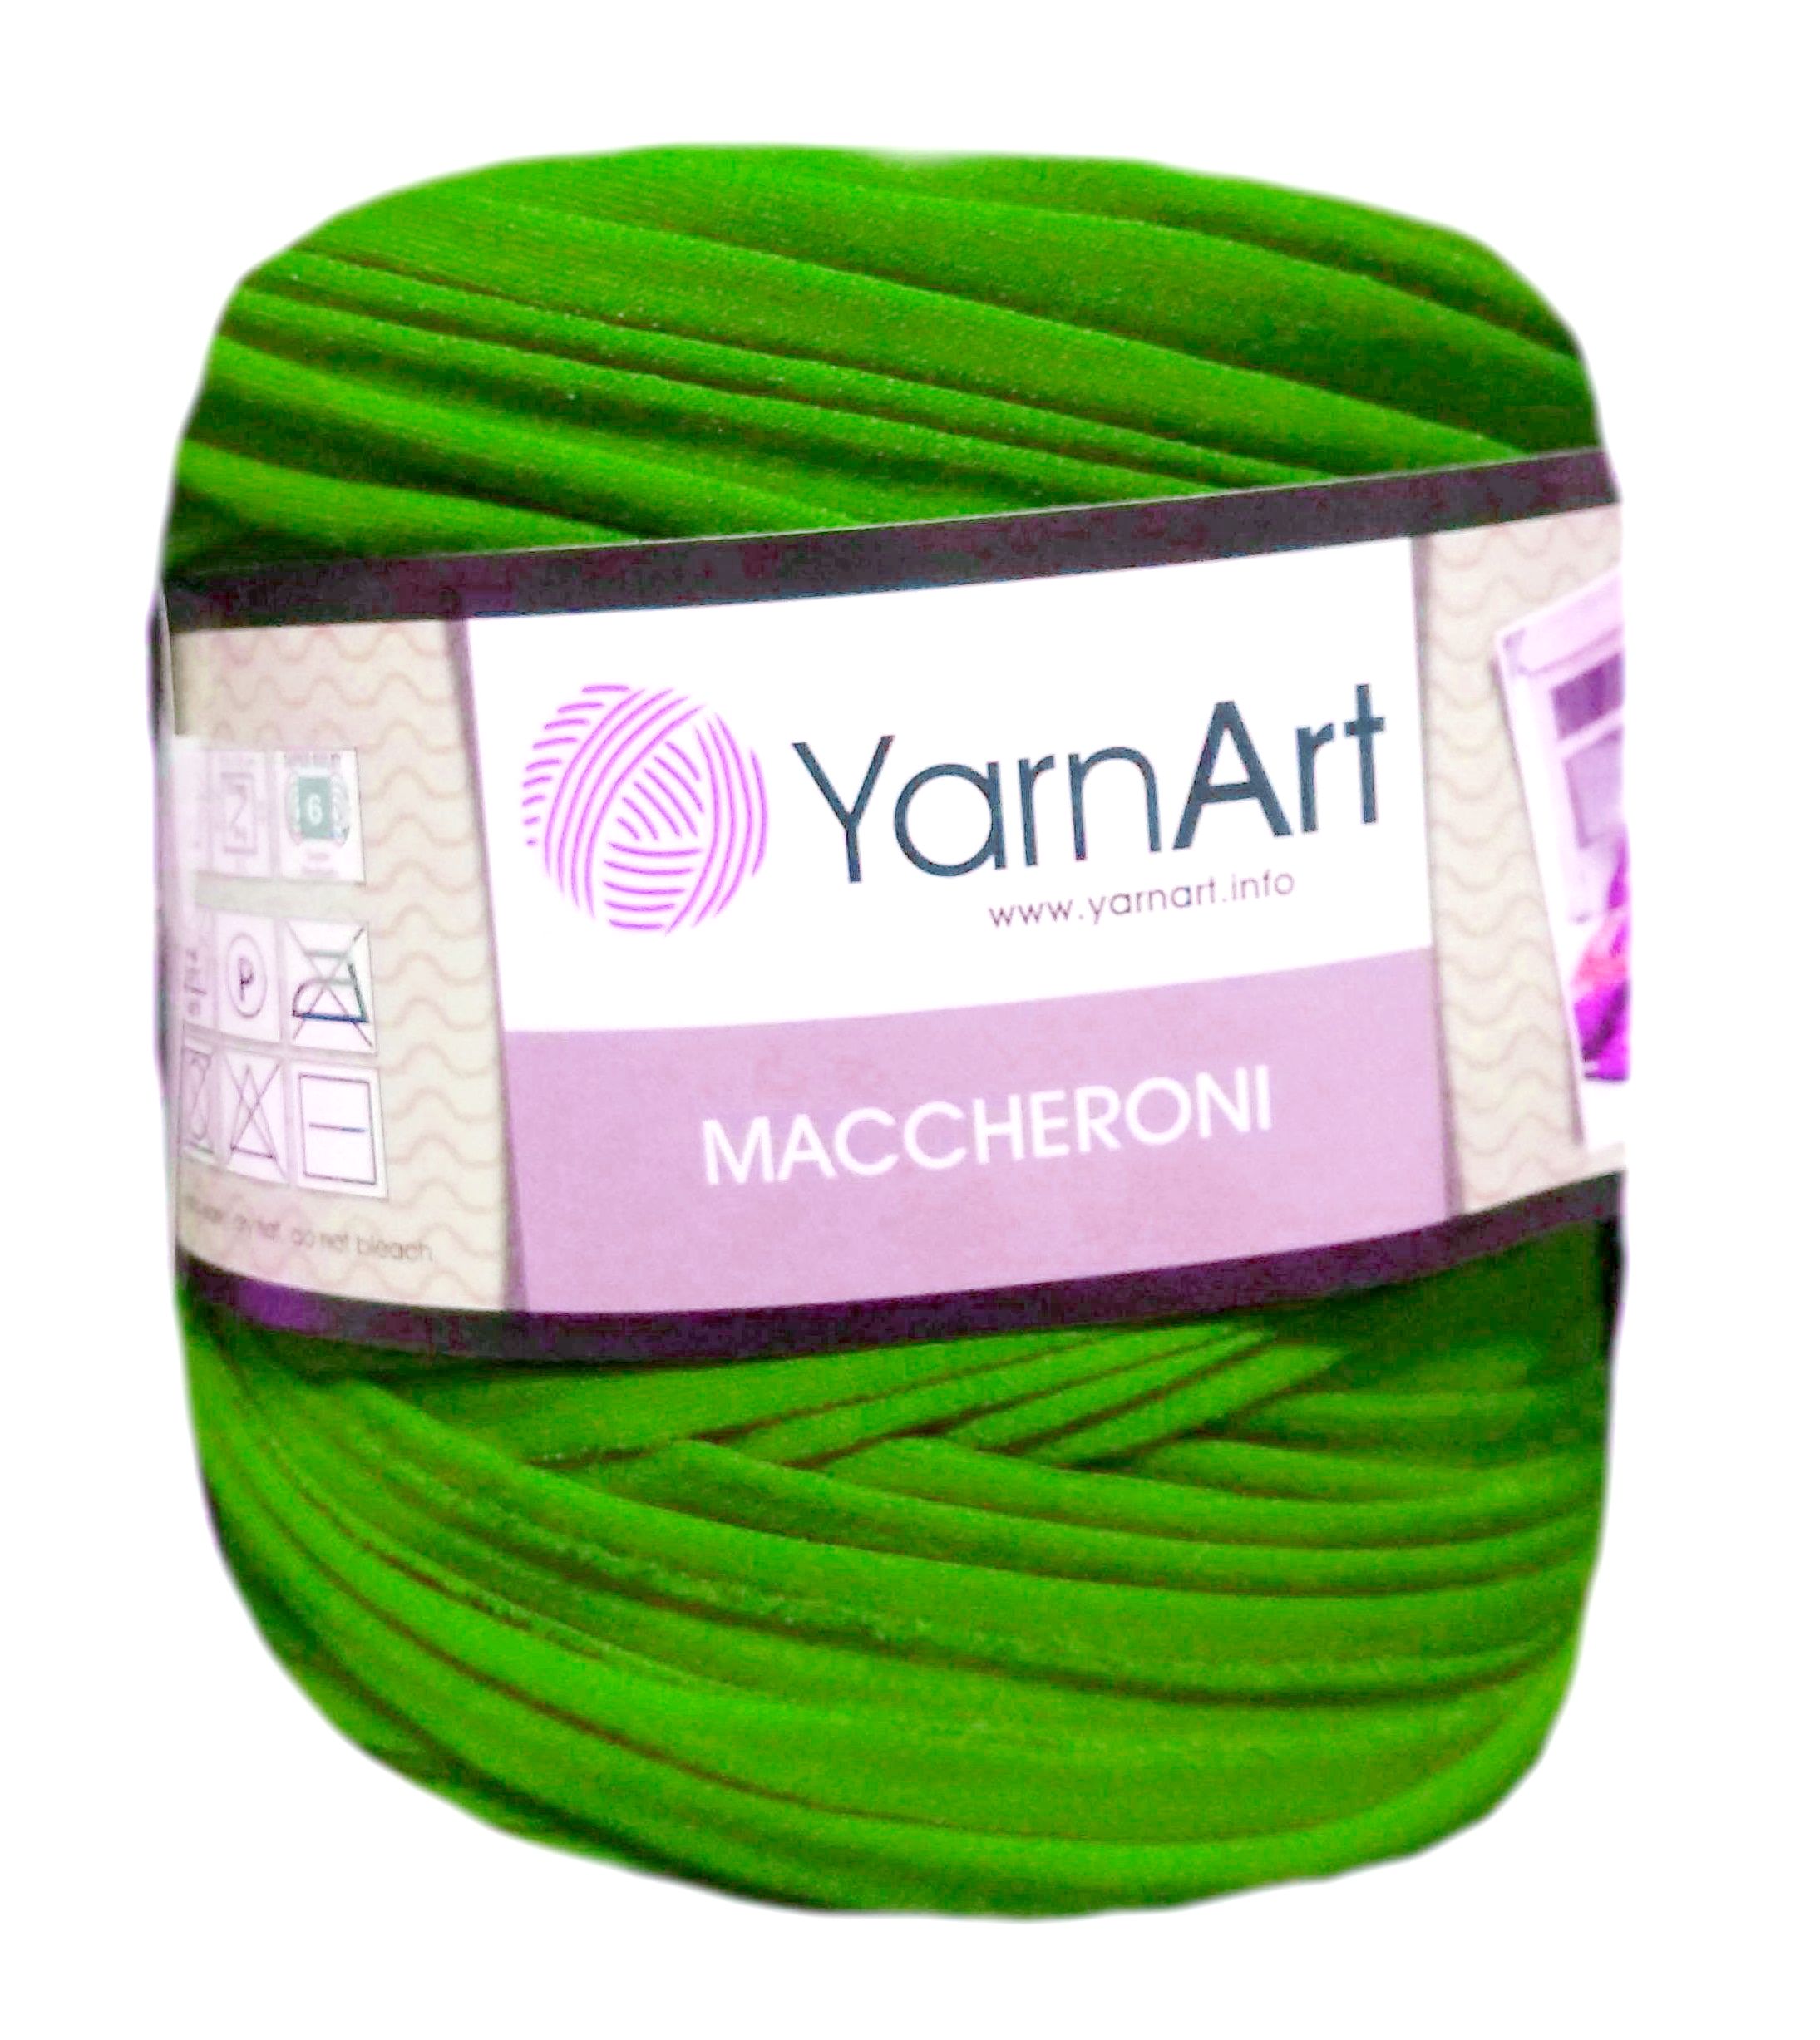 YarnArt MACCHERONI, világoszöld póló fonal.Tű 12-15 mm.